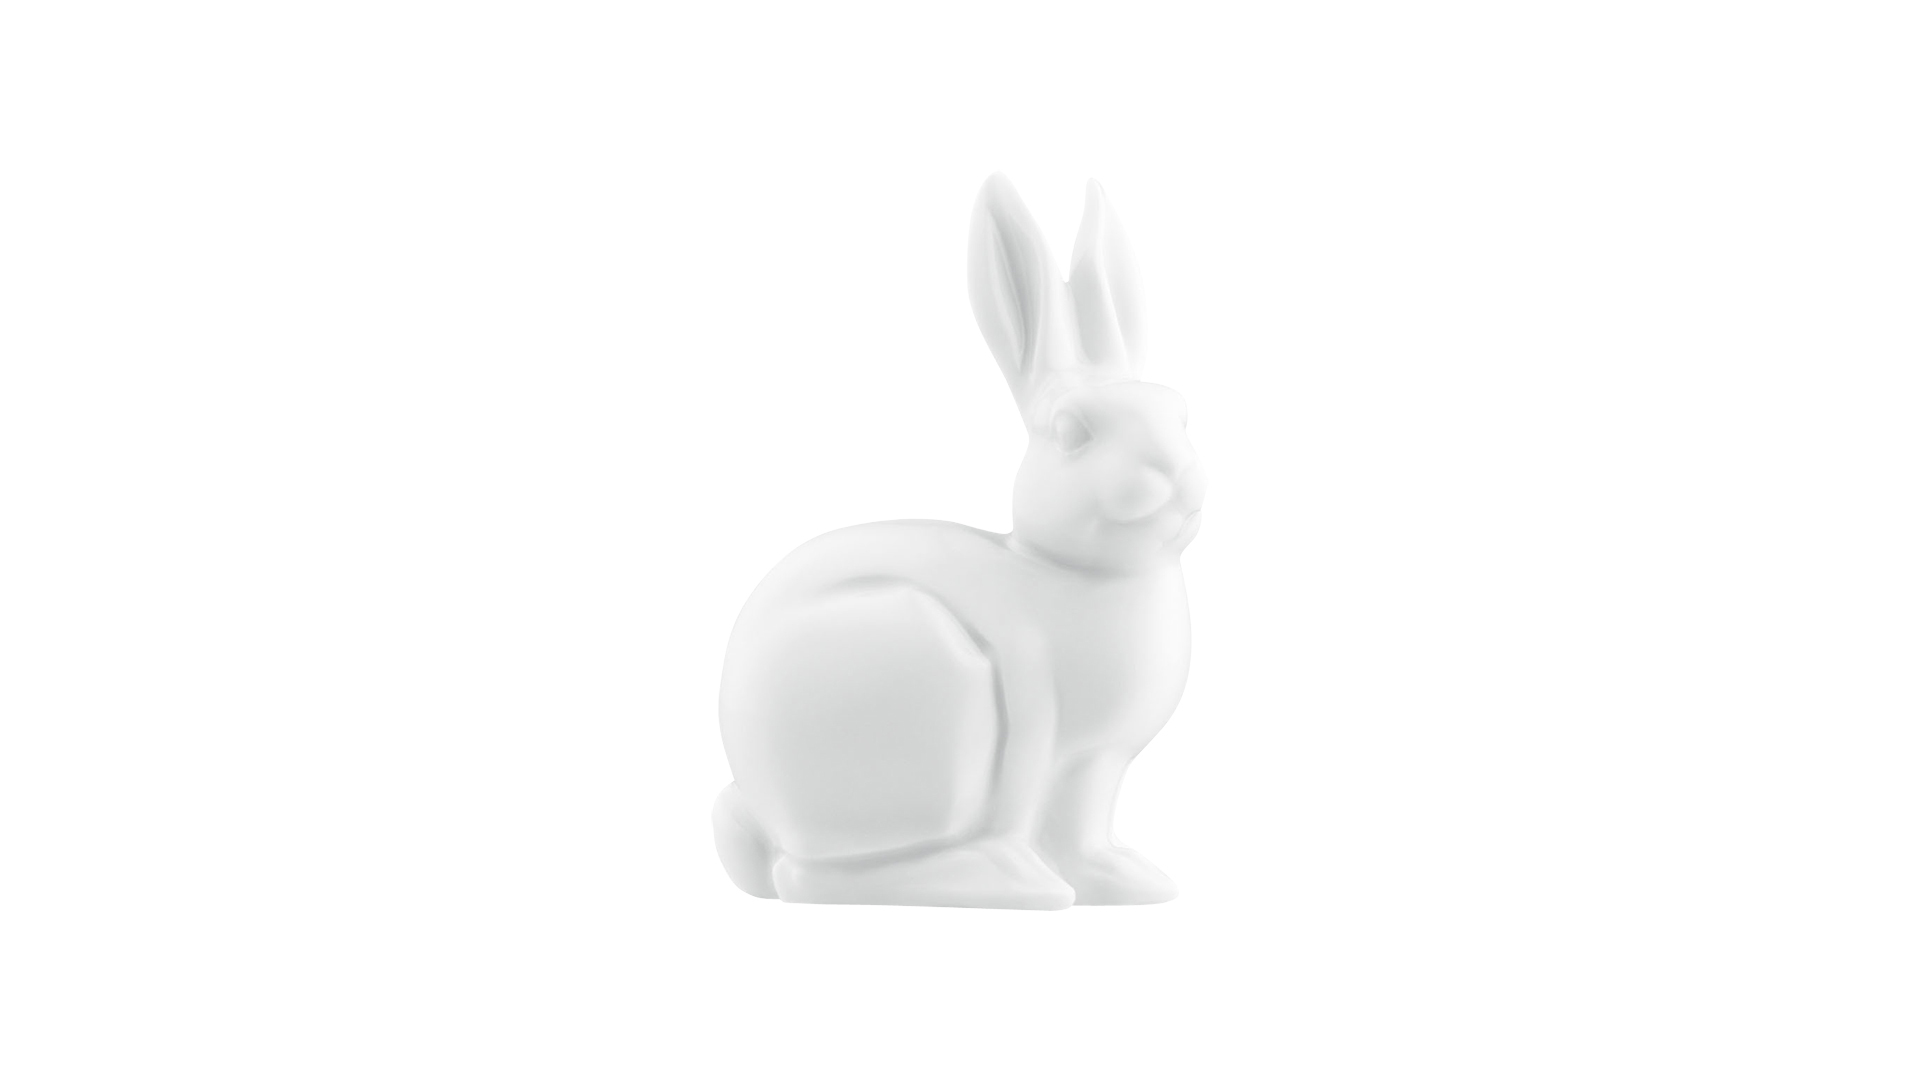 Фигурка Furstenberg Кролик-путешественник 2006г 10 см, белая